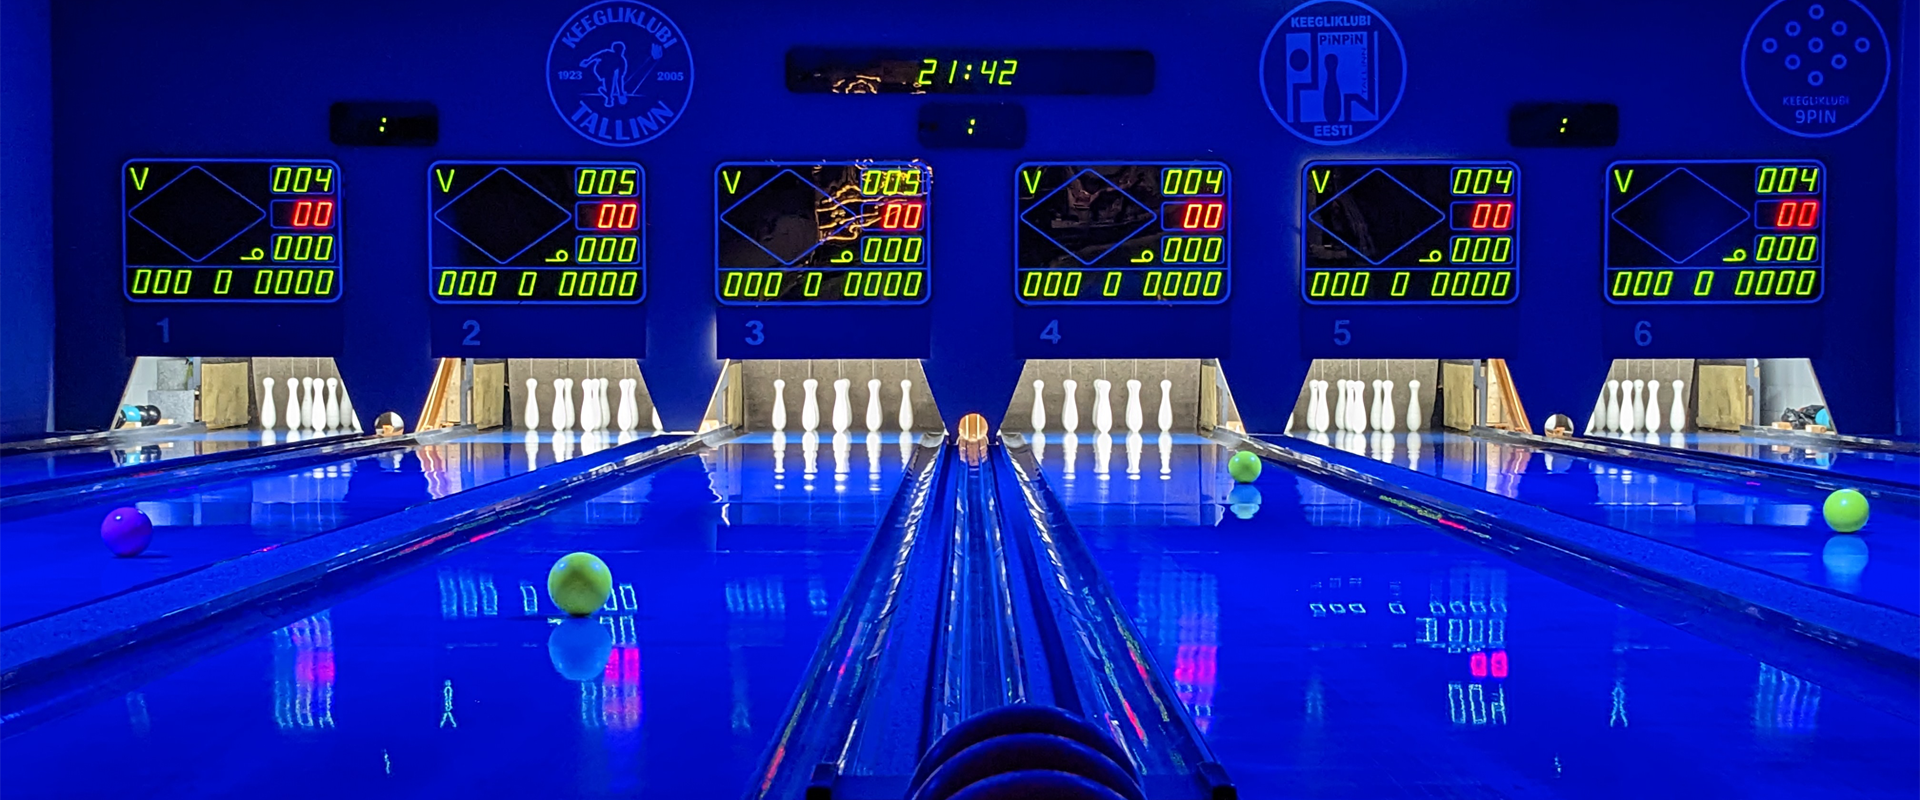 Nine-pin bowling at night